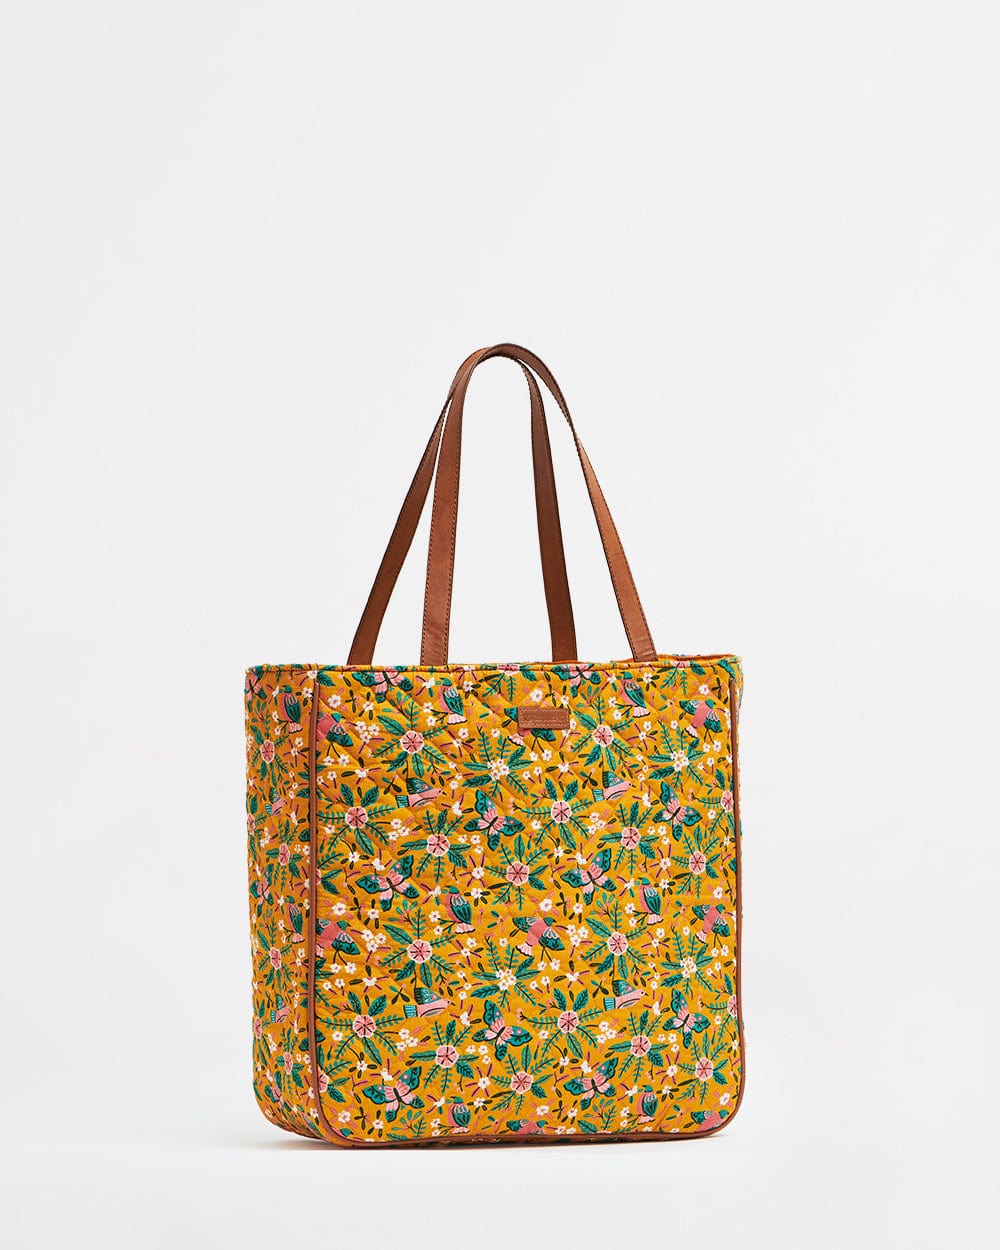 TOGO Handmade Bucket Shoulder Bag - Apricot – msncraft